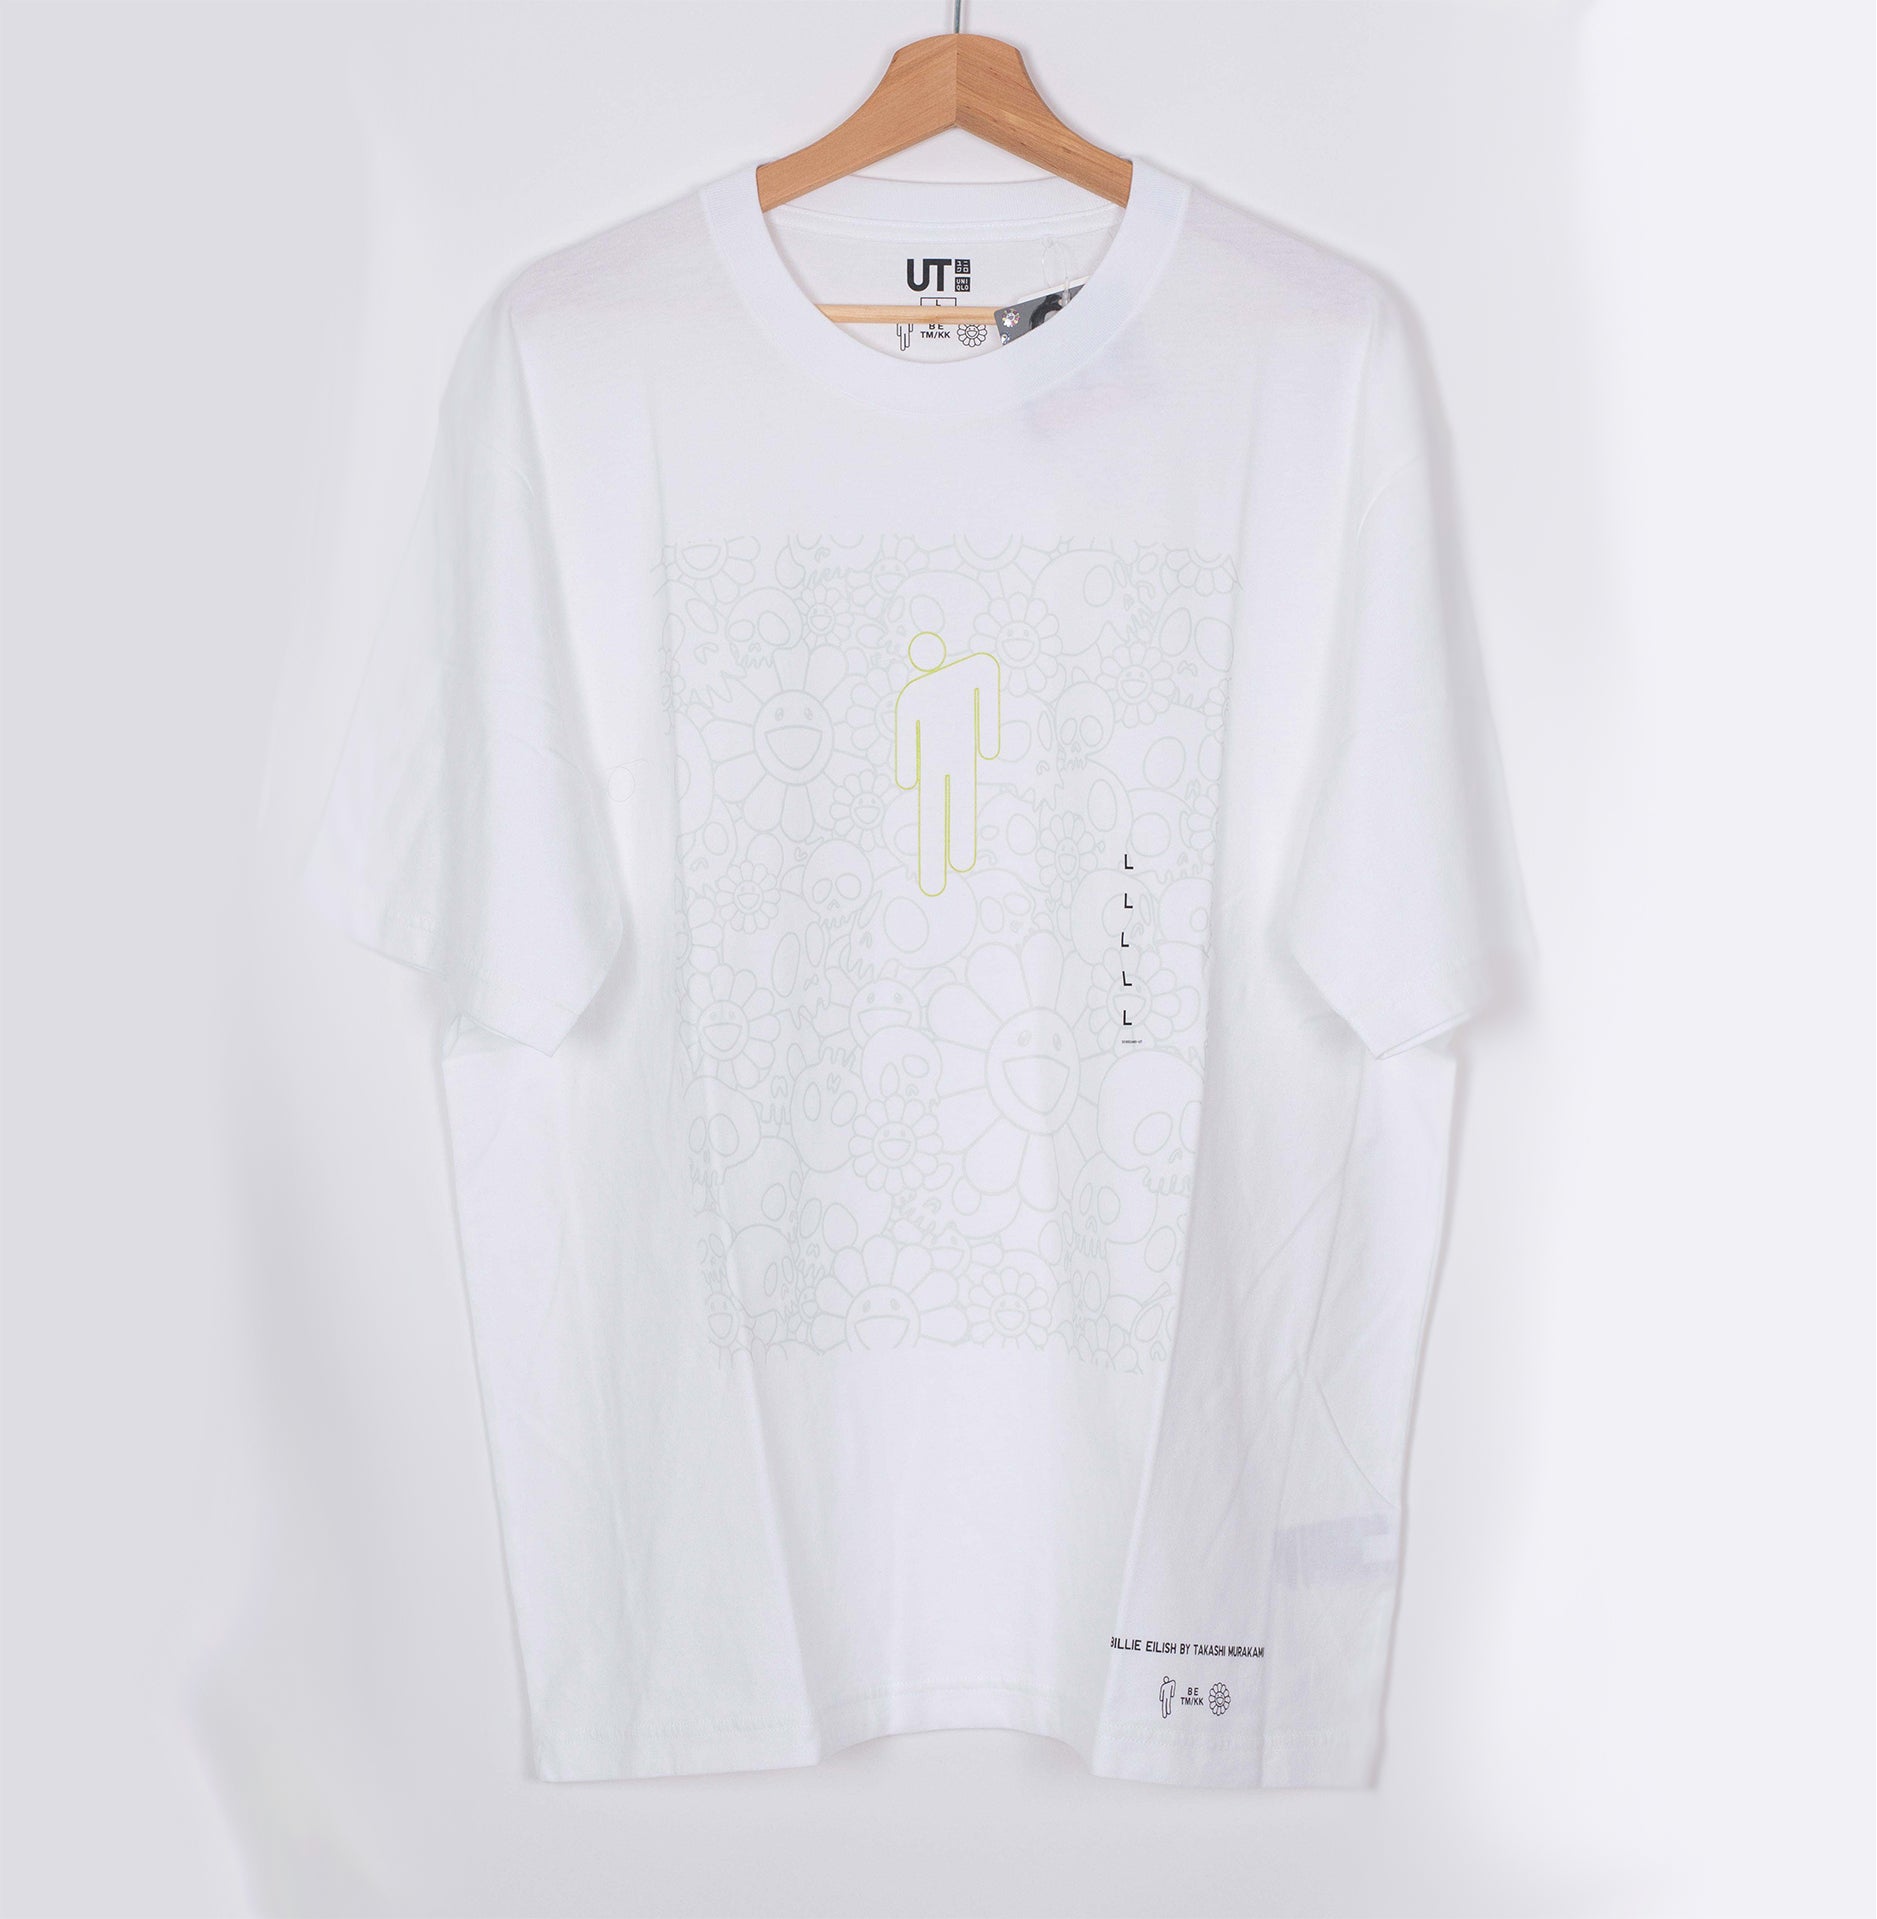 Uniqlo x Billie Eilish x Takashi Murakami Flower Skulls T-Shirt White